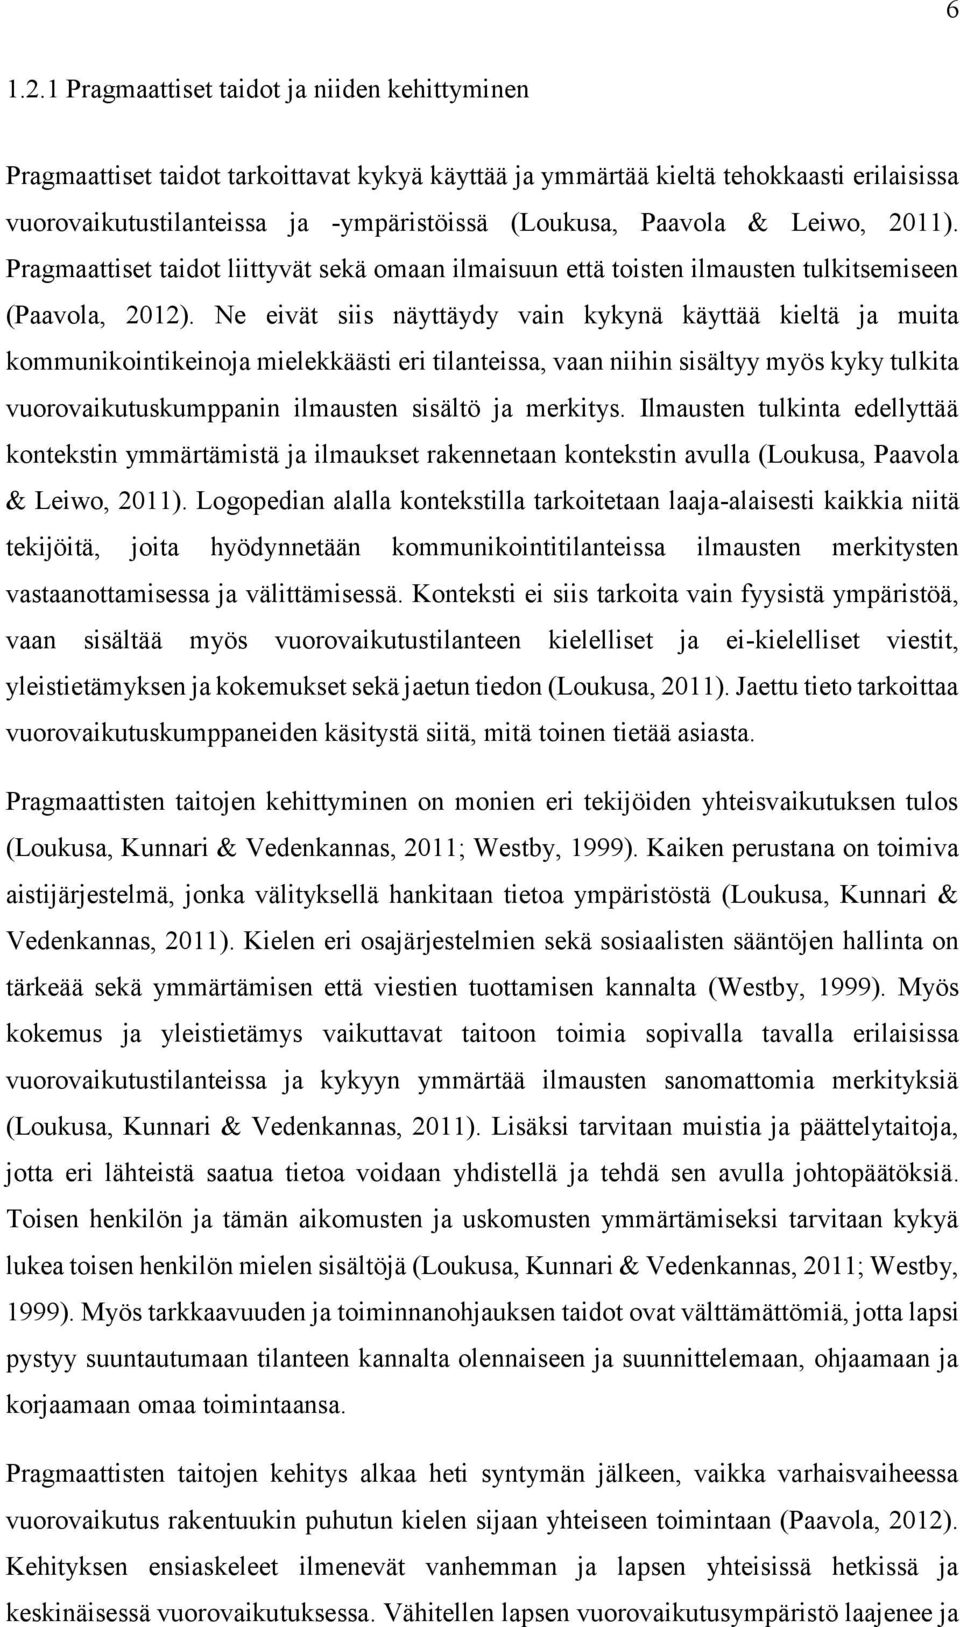 Leiwo, 2011). Pragmaattiset taidot liittyvät sekä omaan ilmaisuun että toisten ilmausten tulkitsemiseen (Paavola, 2012).